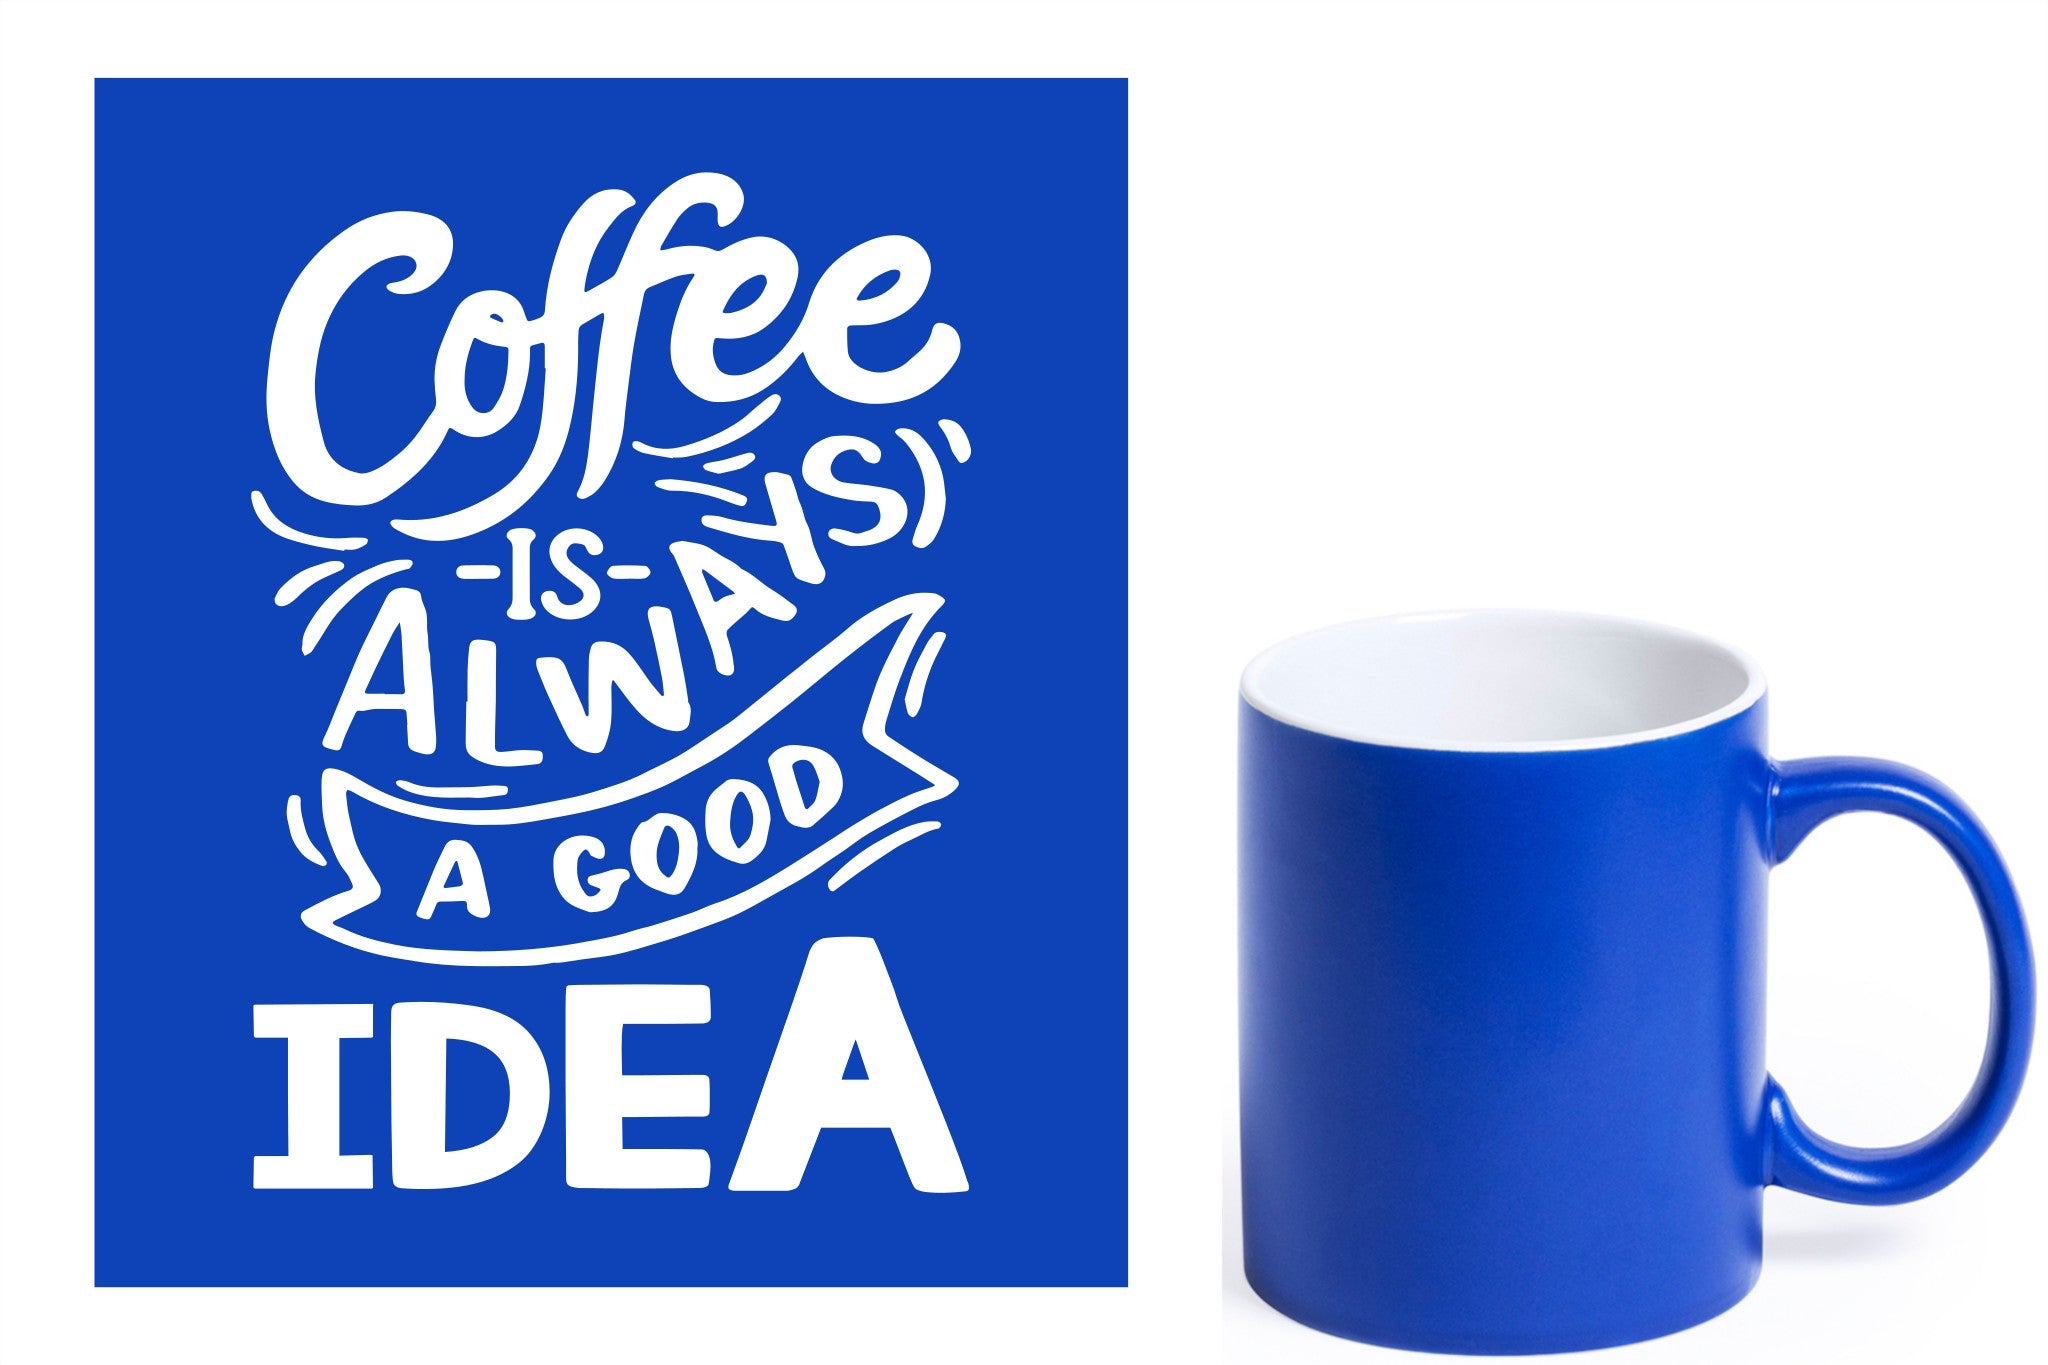 Blauwe keramische mok met witte gravure  'Coffee is always a good idea'.